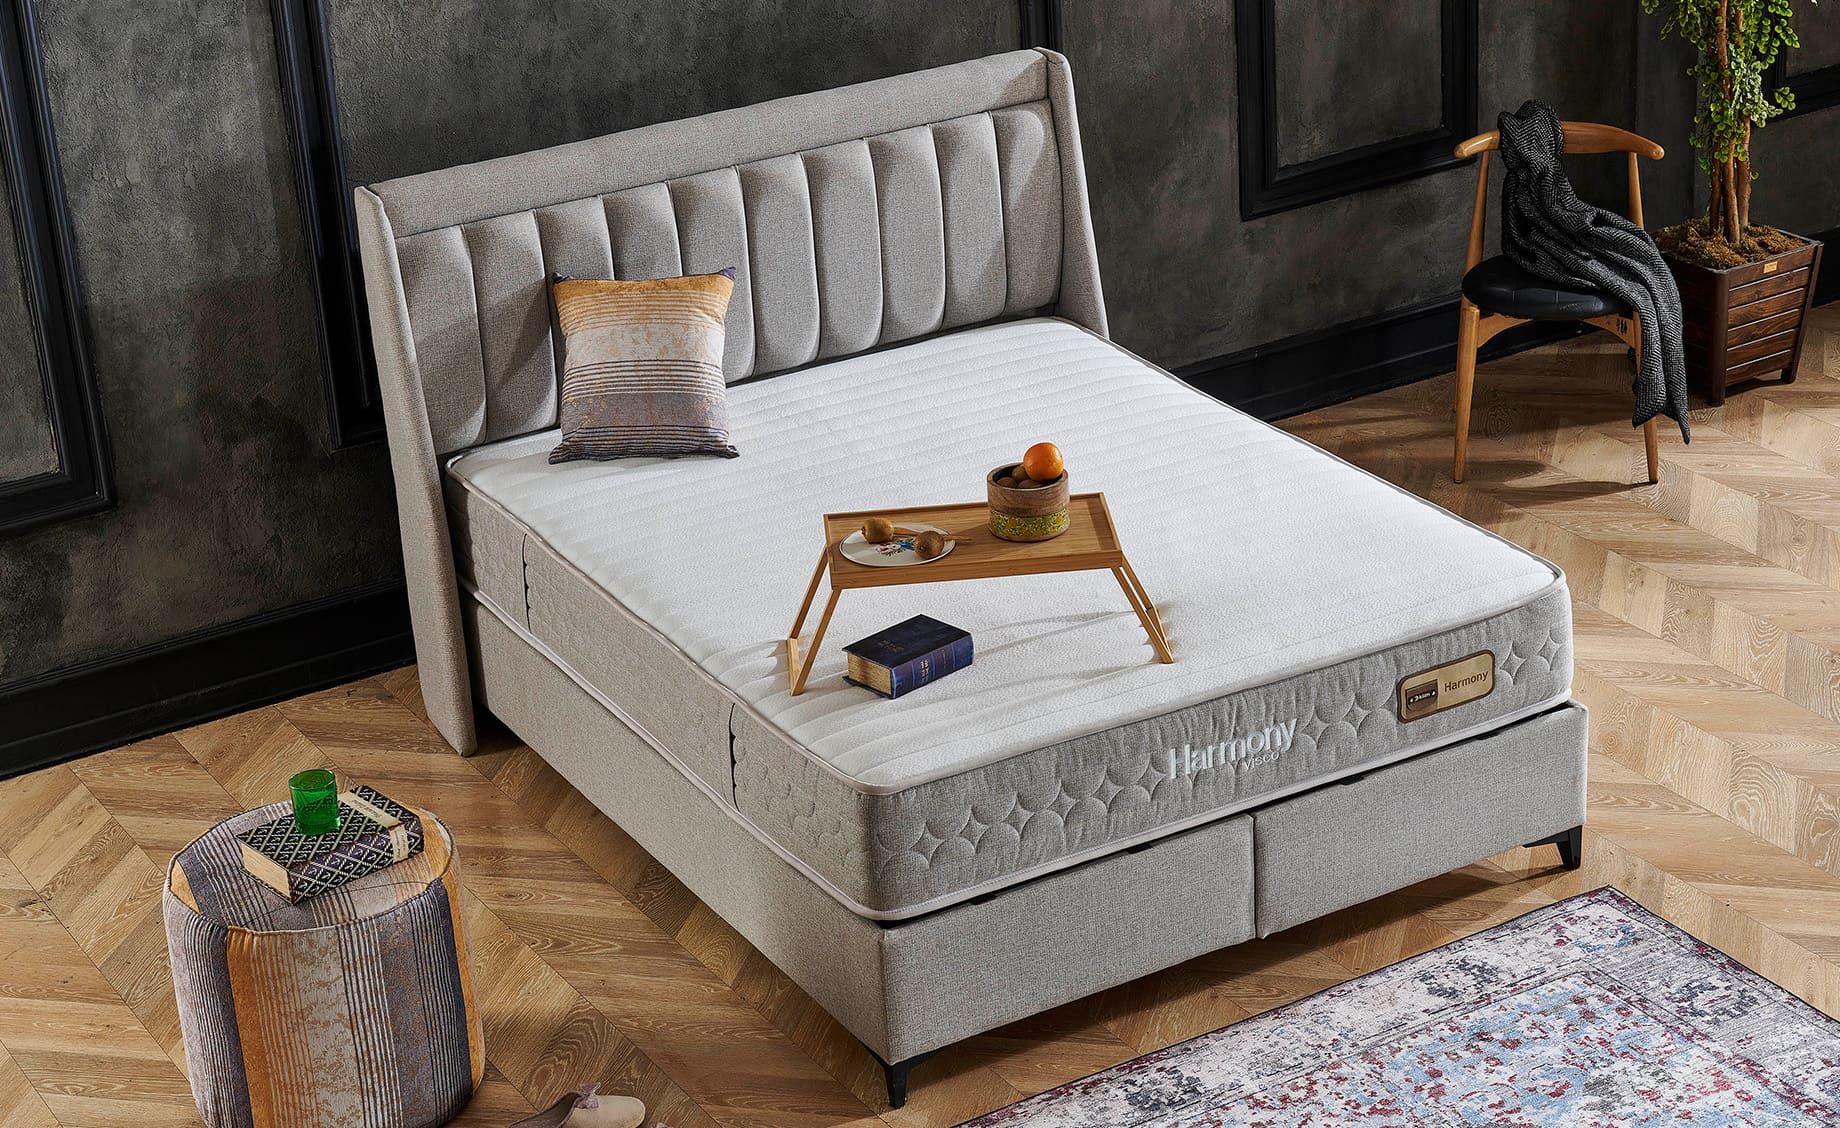 Harmony boxspring krevet sa prostorom za odlaganje 195x207x126/66cm